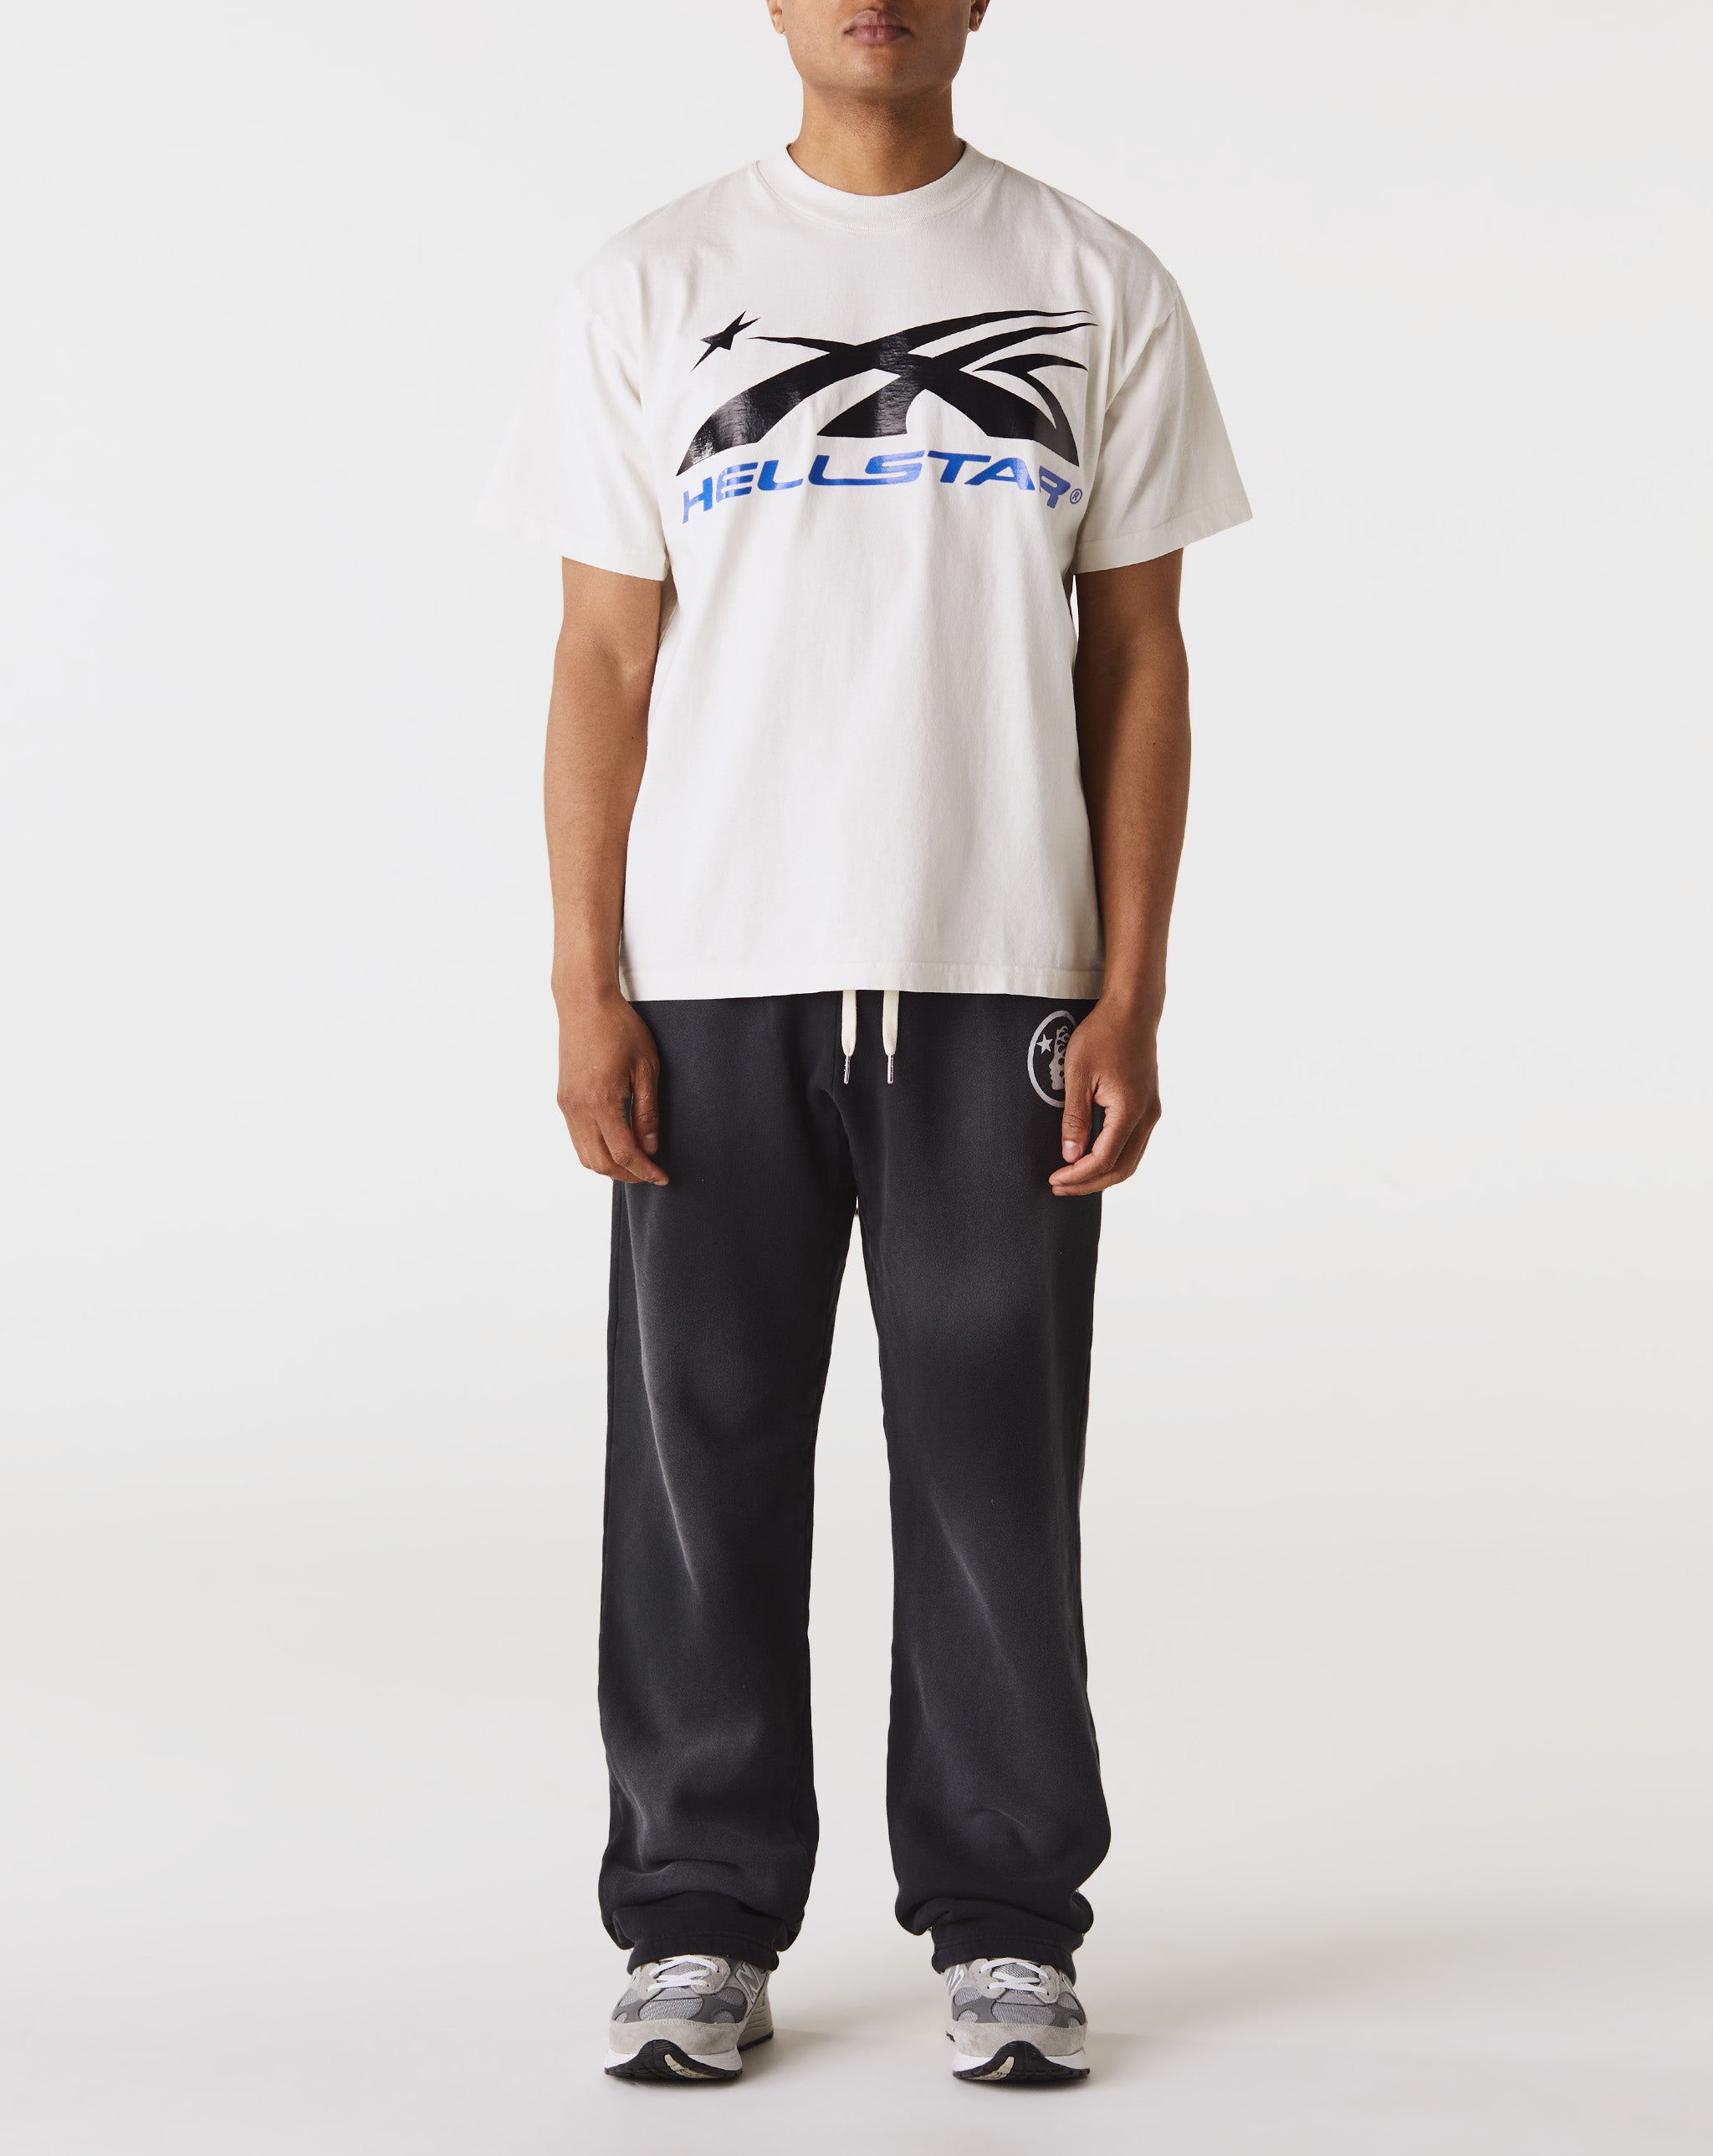 Hellstar Gel Sport Logo T-Shirt  - Cheap Urlfreeze Jordan outlet